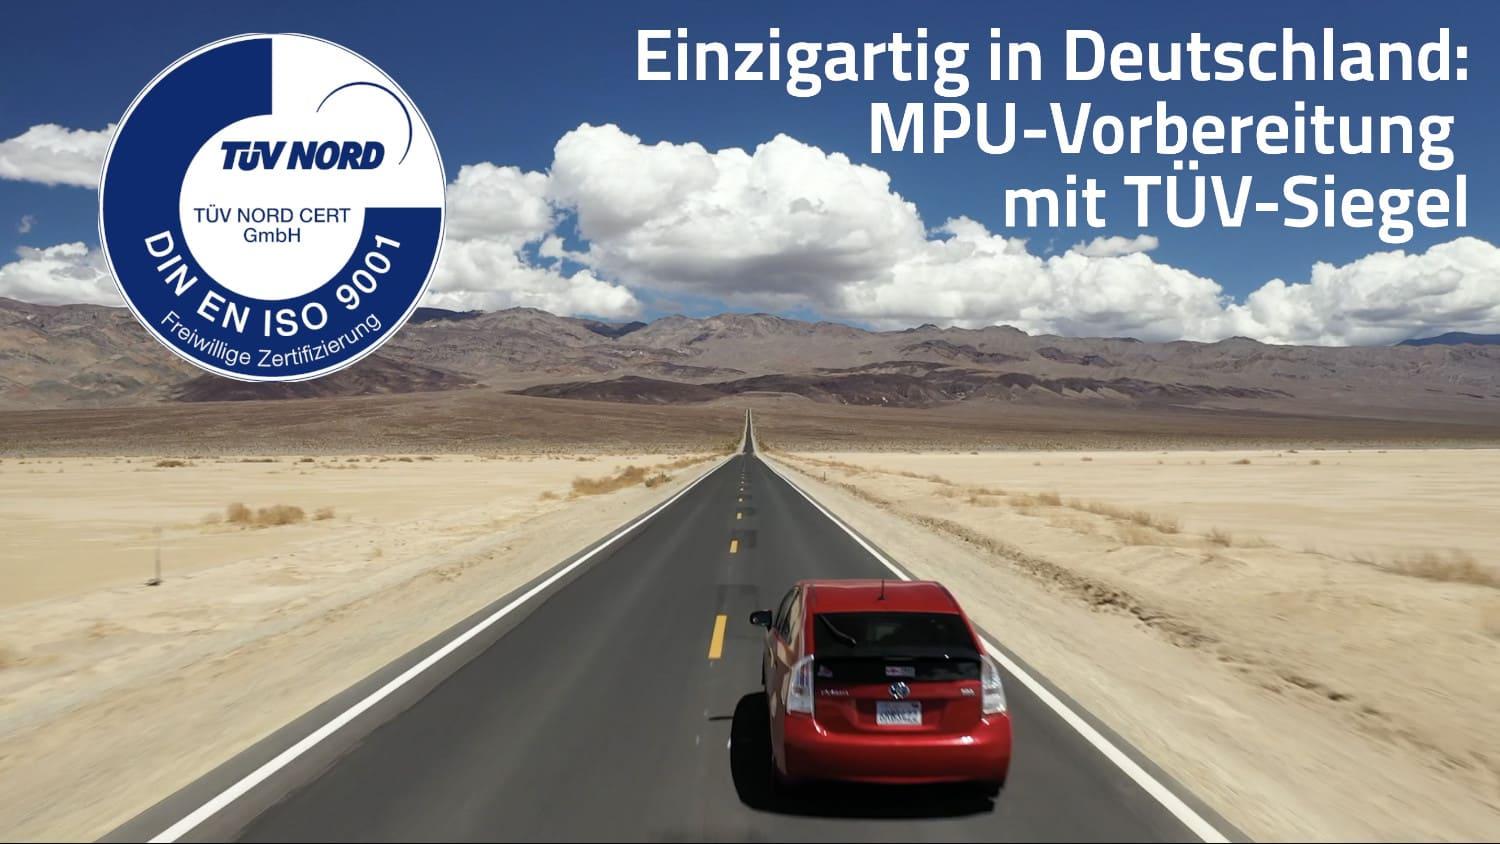 Bilder Dr. Deecke MPU Vorbereitung Heilbronn | MPU PROFI | Verkehrspsychologen